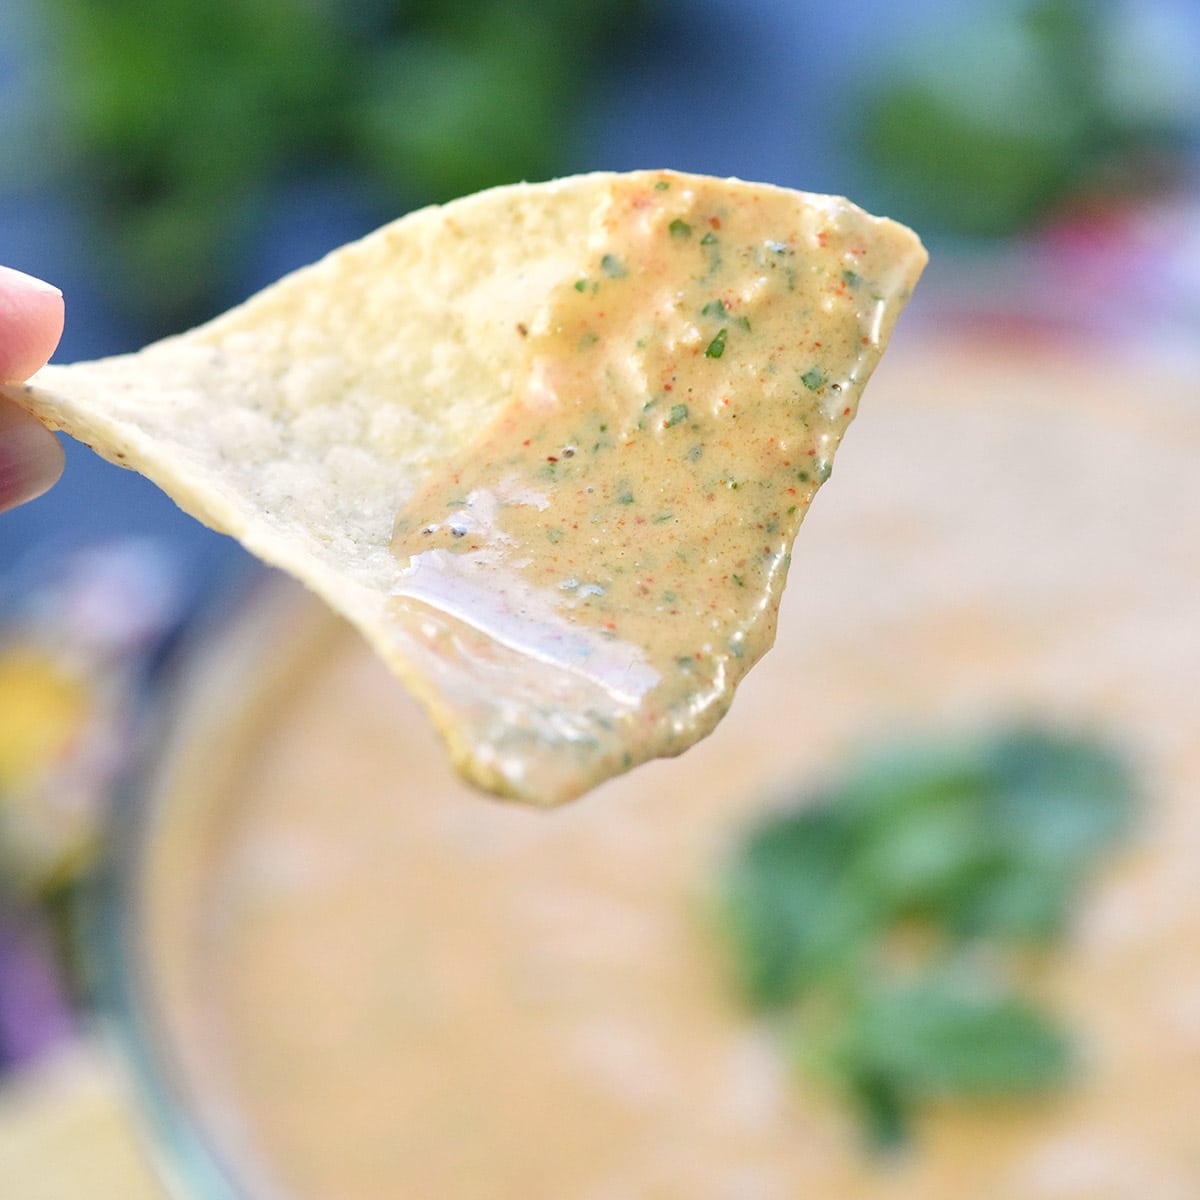 Creamy Salsa Dip close-up on a tortilla chip.